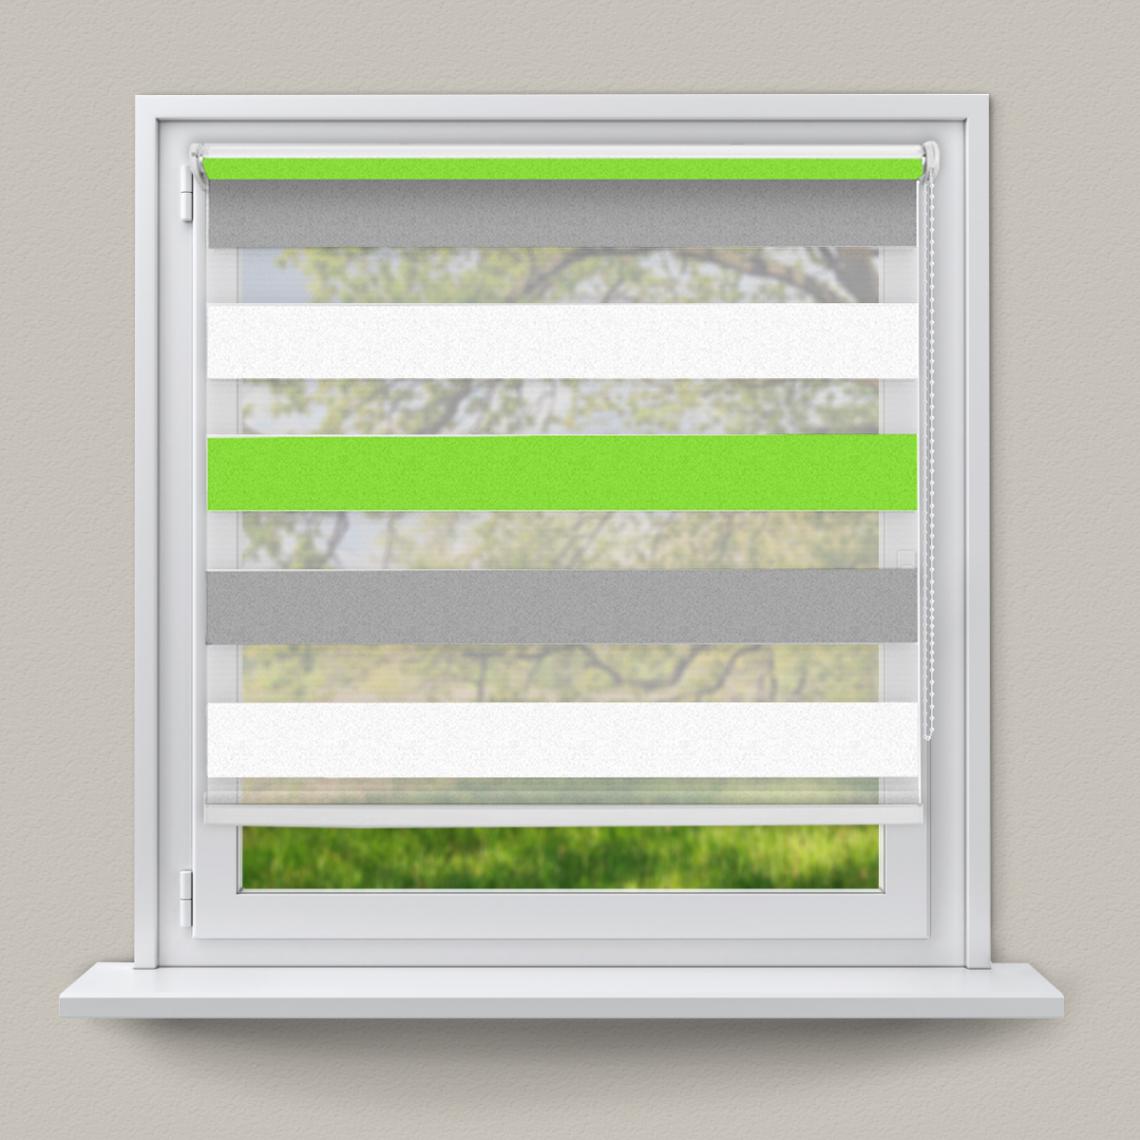 Ecd Germany - Store double à enrouleur sans perçage pour fenêtre 90 x 230 cm Vert Gris Blanc - Store compatible Velux